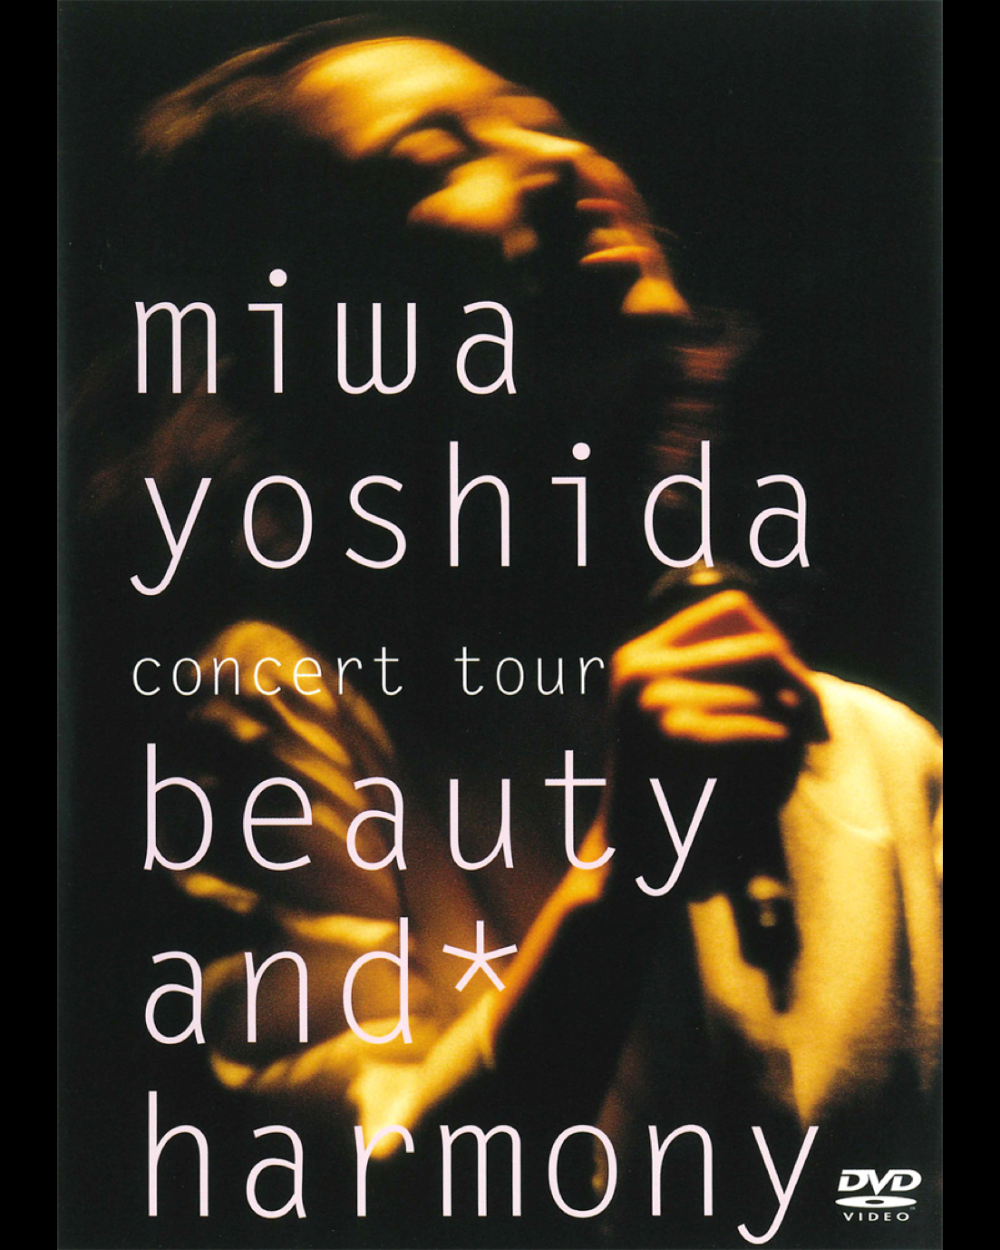 	miwa yohida【DVD】miwa yoshida concert tour beauty and＊harmony